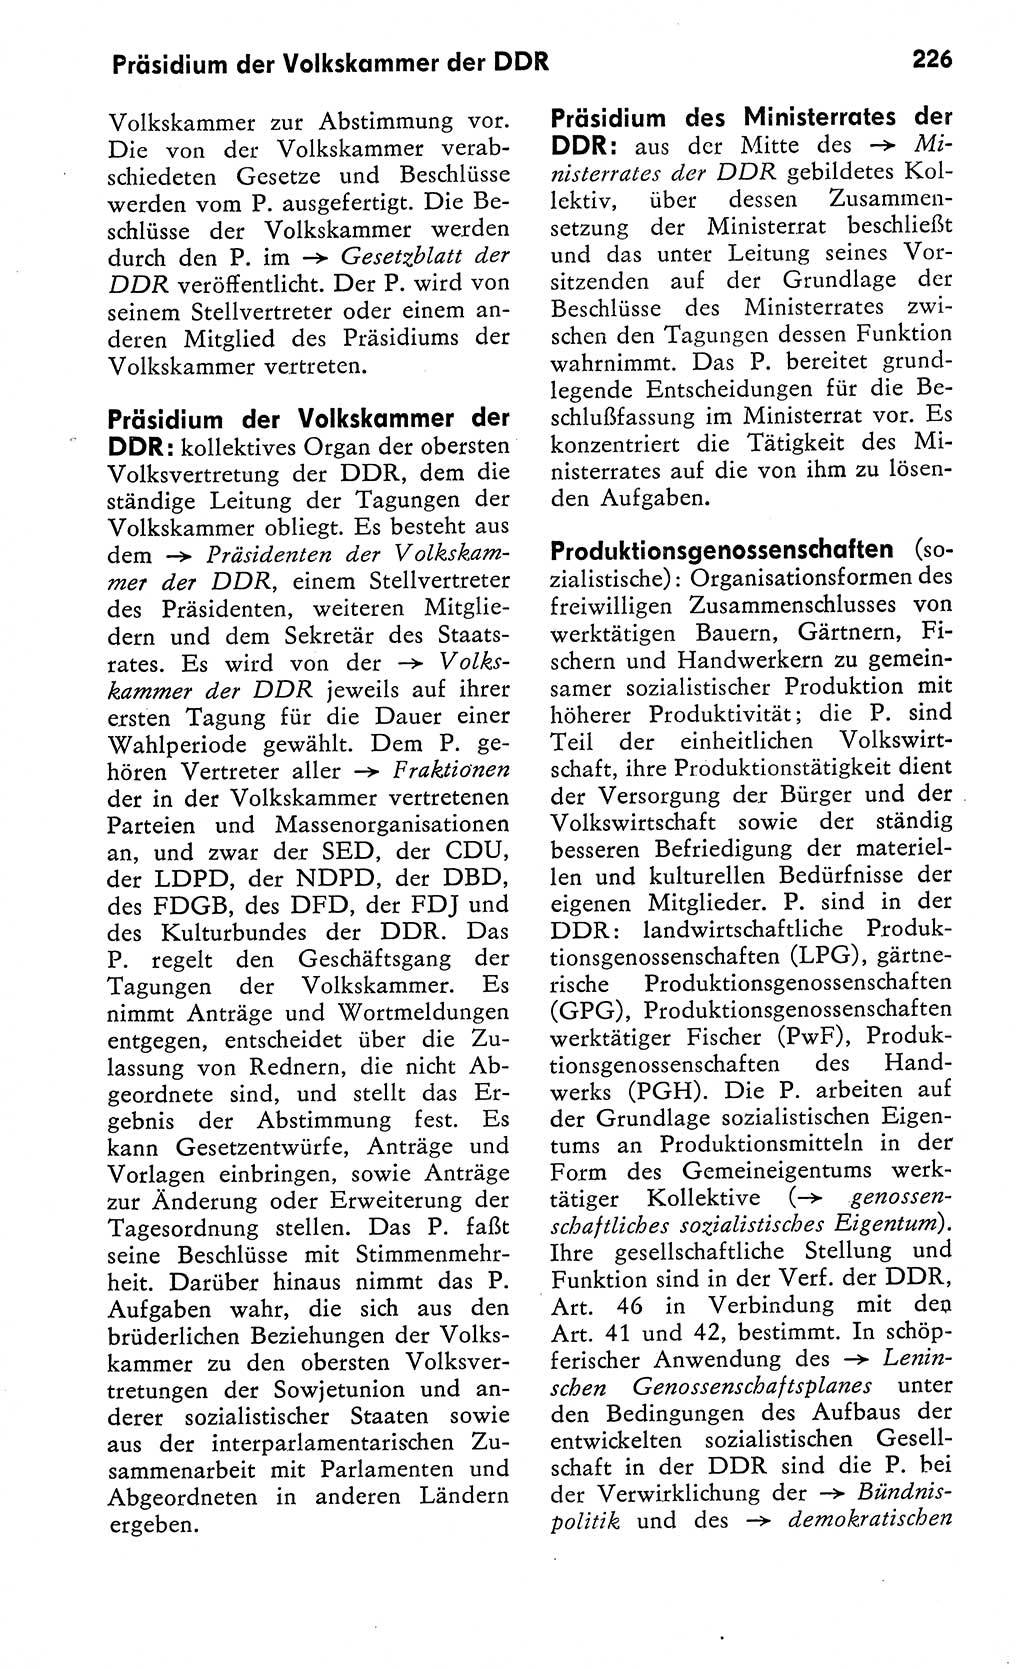 Wörterbuch zum sozialistischen Staat [Deutsche Demokratische Republik (DDR)] 1974, Seite 226 (Wb. soz. St. DDR 1974, S. 226)